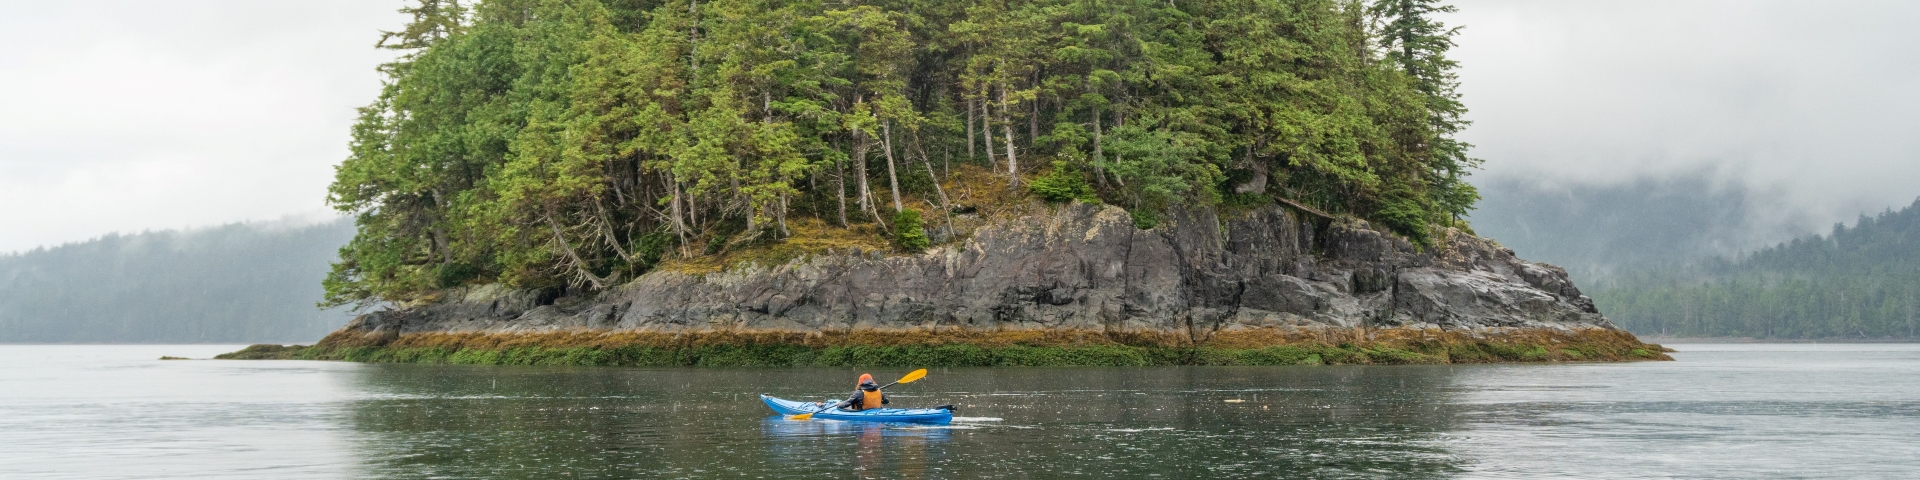 Un kayakiste solitaire sur l’eau.